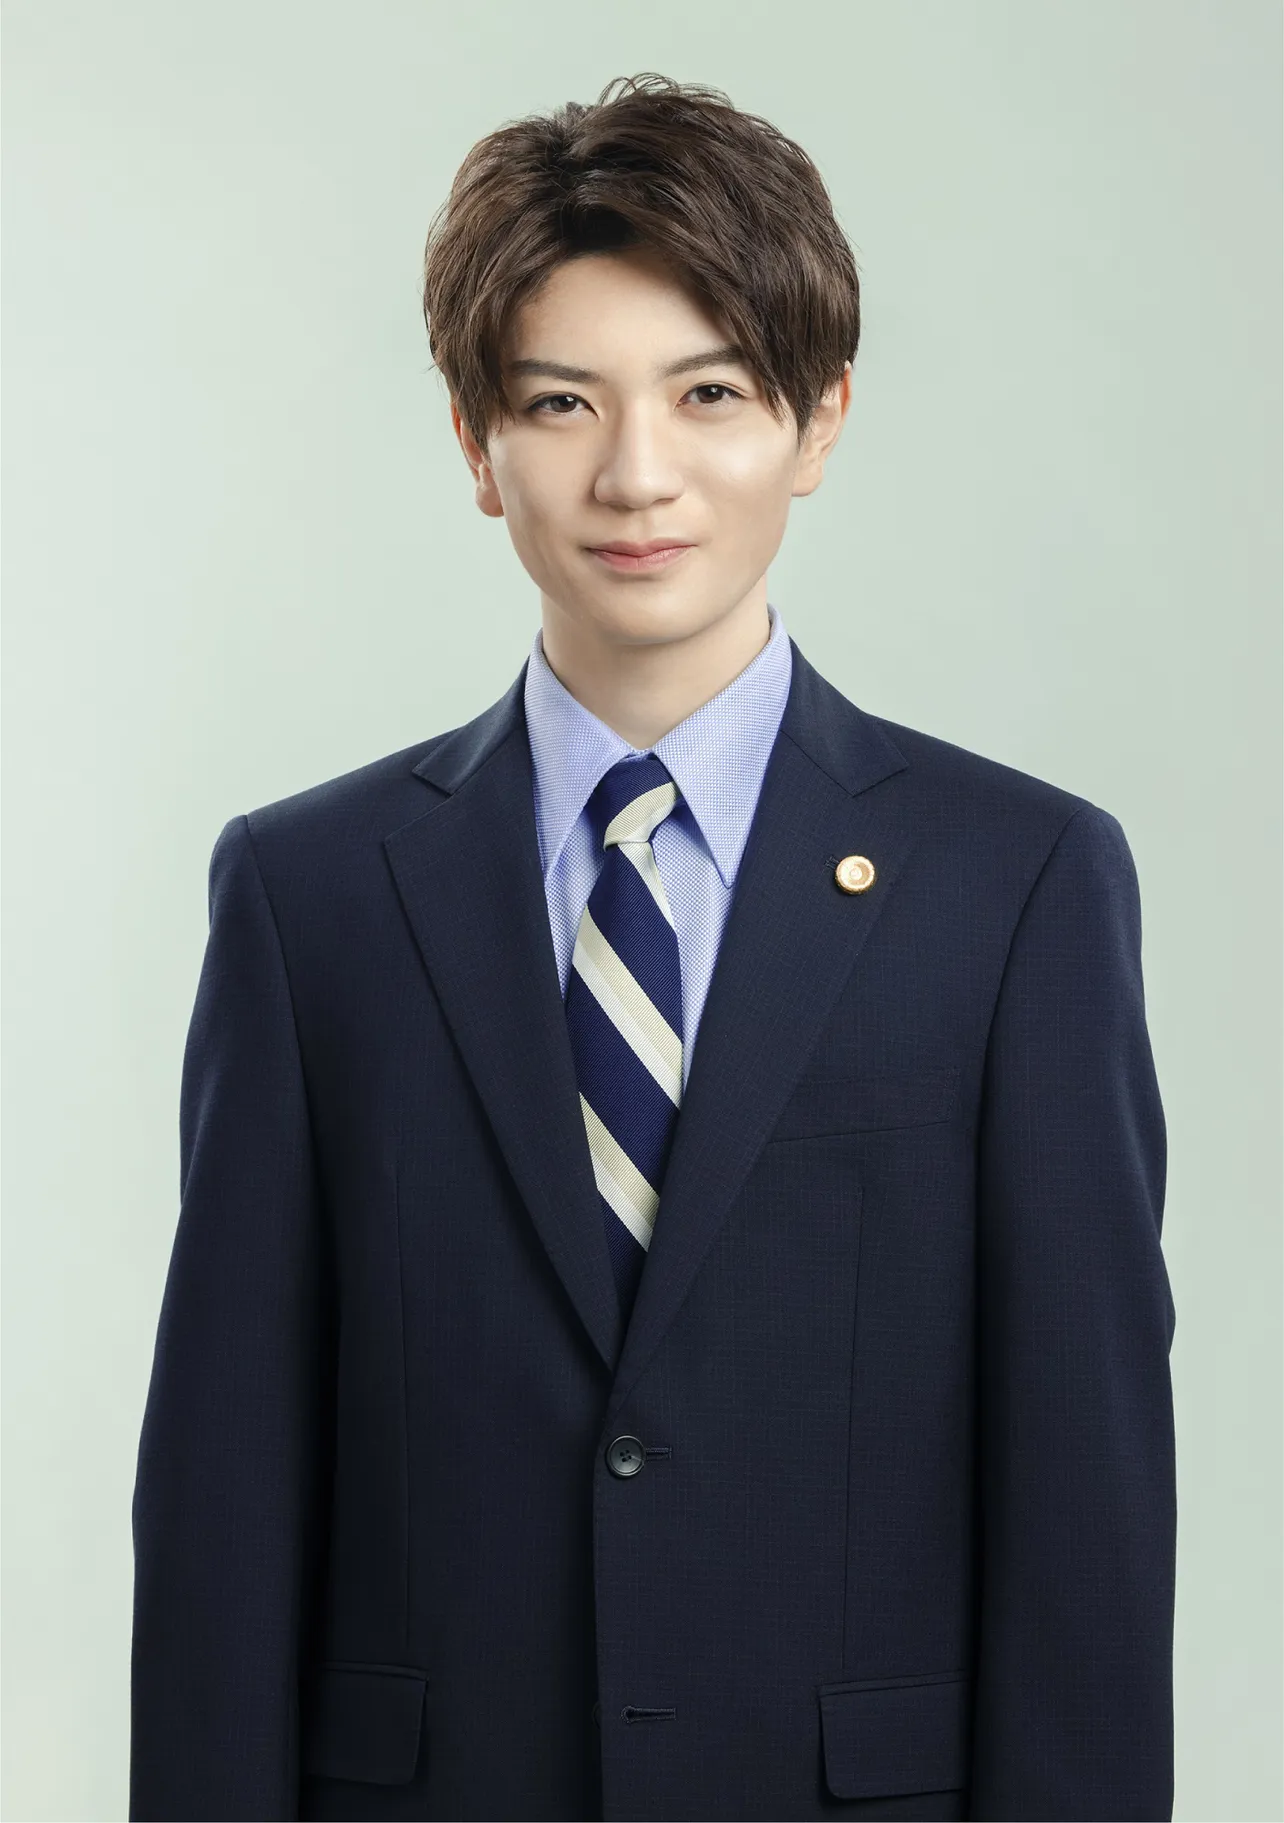 日本テレビ系新ドラマ「勝利の法廷式」で、HiHi Jets・高橋優斗が新人弁護士役に挑戦